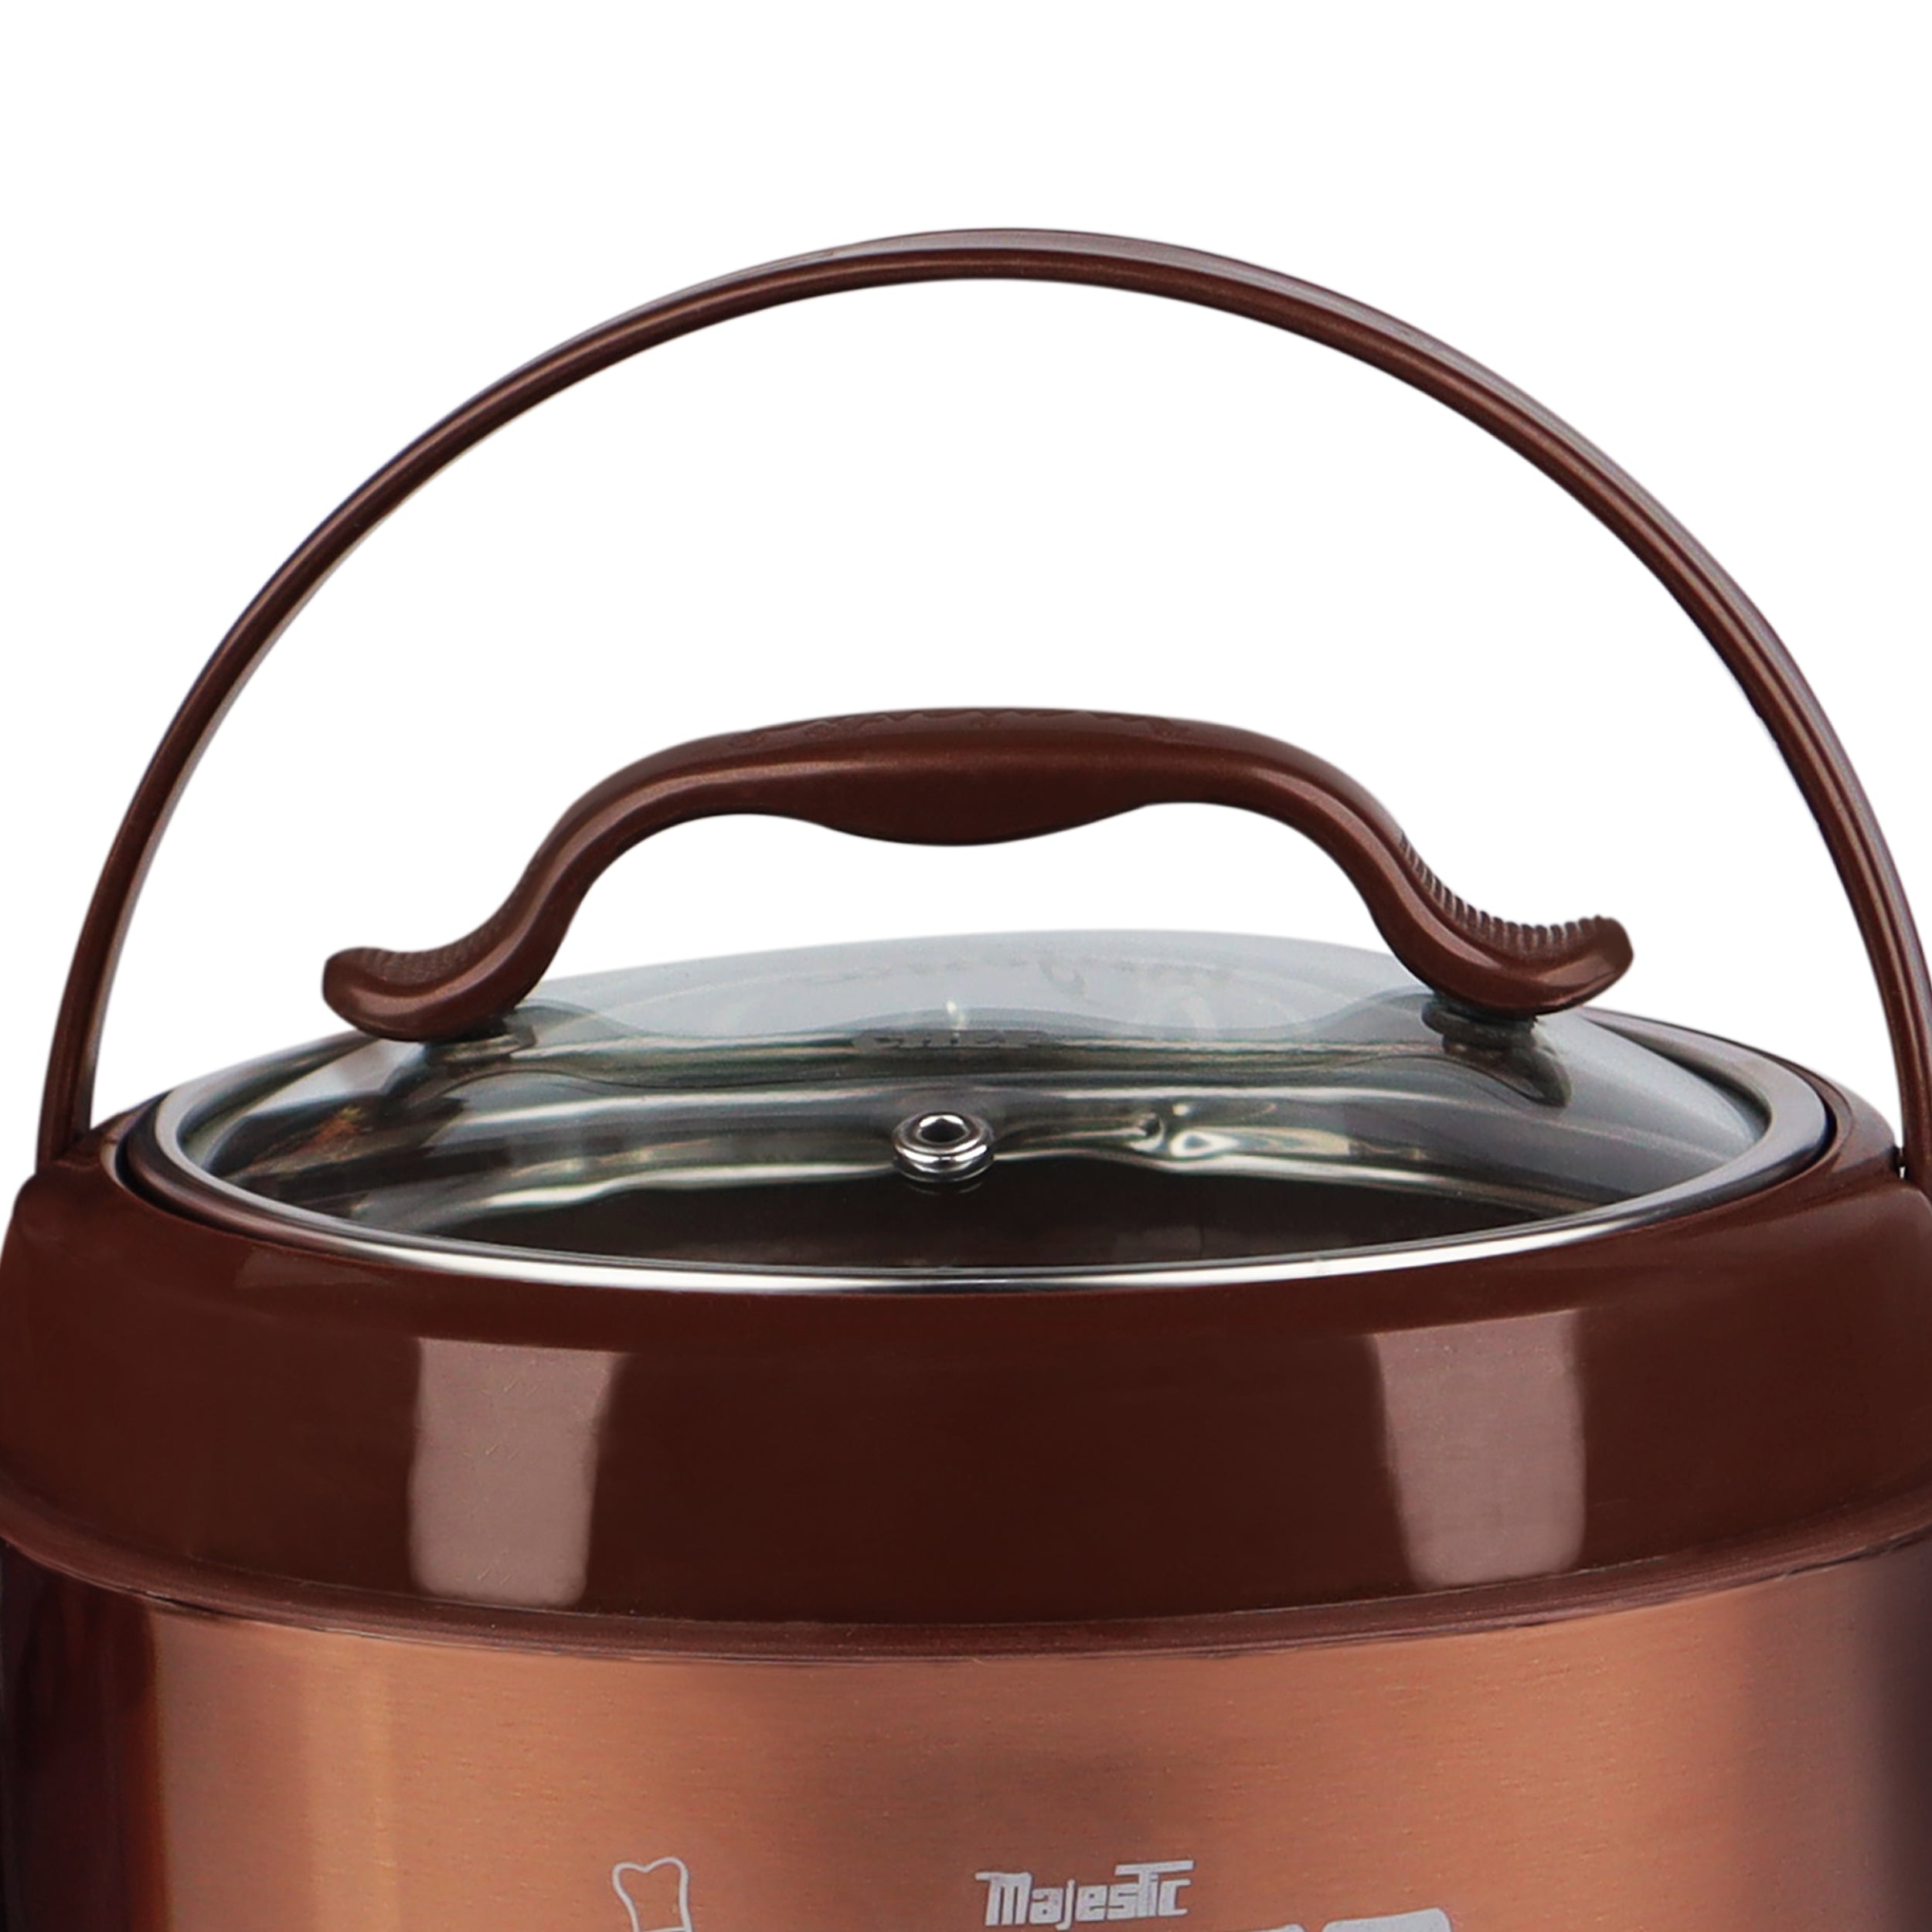 Hot pot cooler set majestic (4p) 